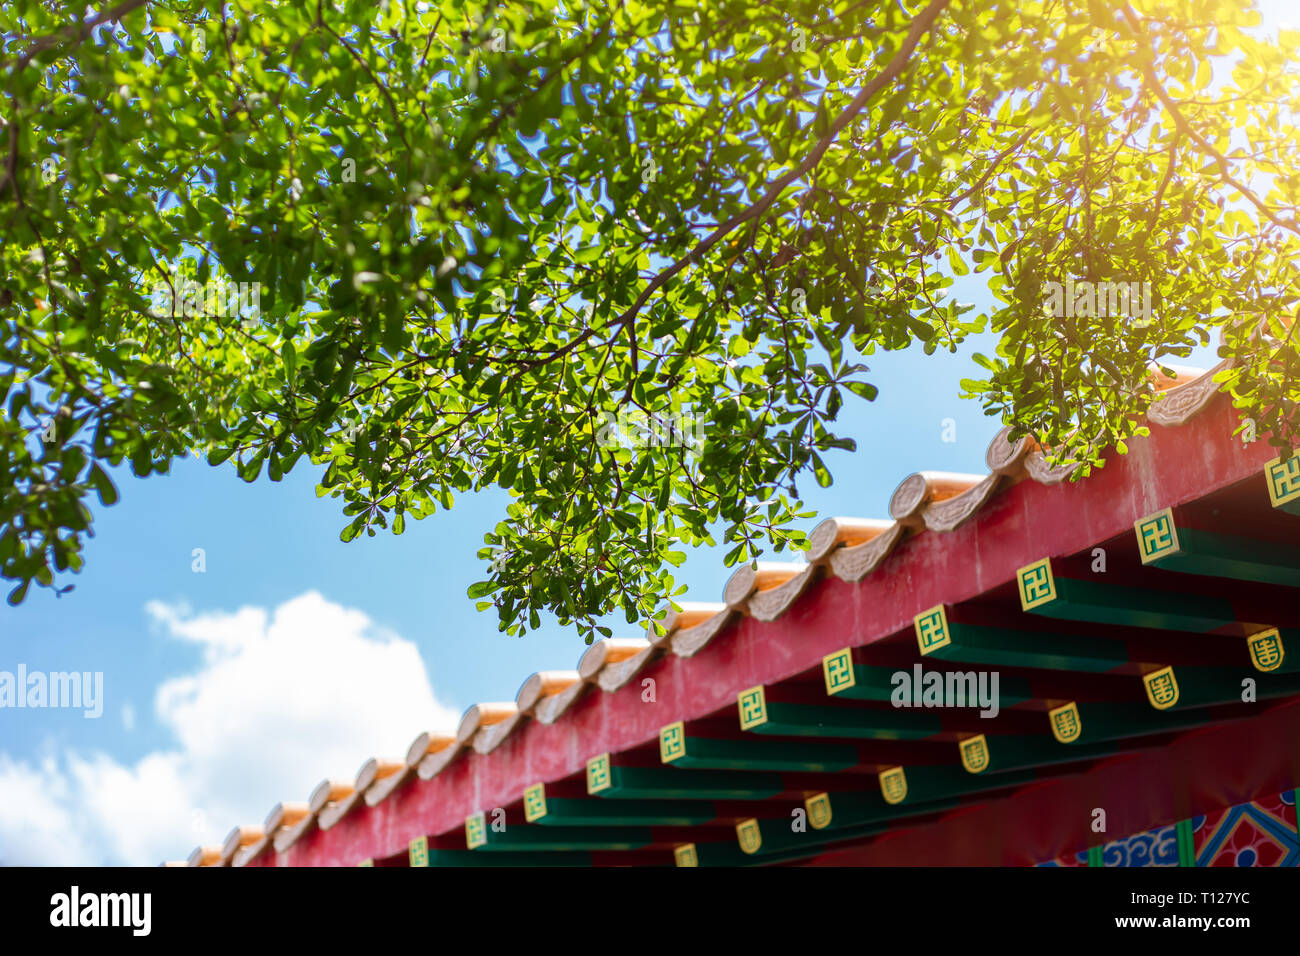 Asan chinesischen Stil Gebäude mit grünen Baum saubere Luft frische blaue Himmel. China eco nachhaltige Stadt Konzept. Stockfoto